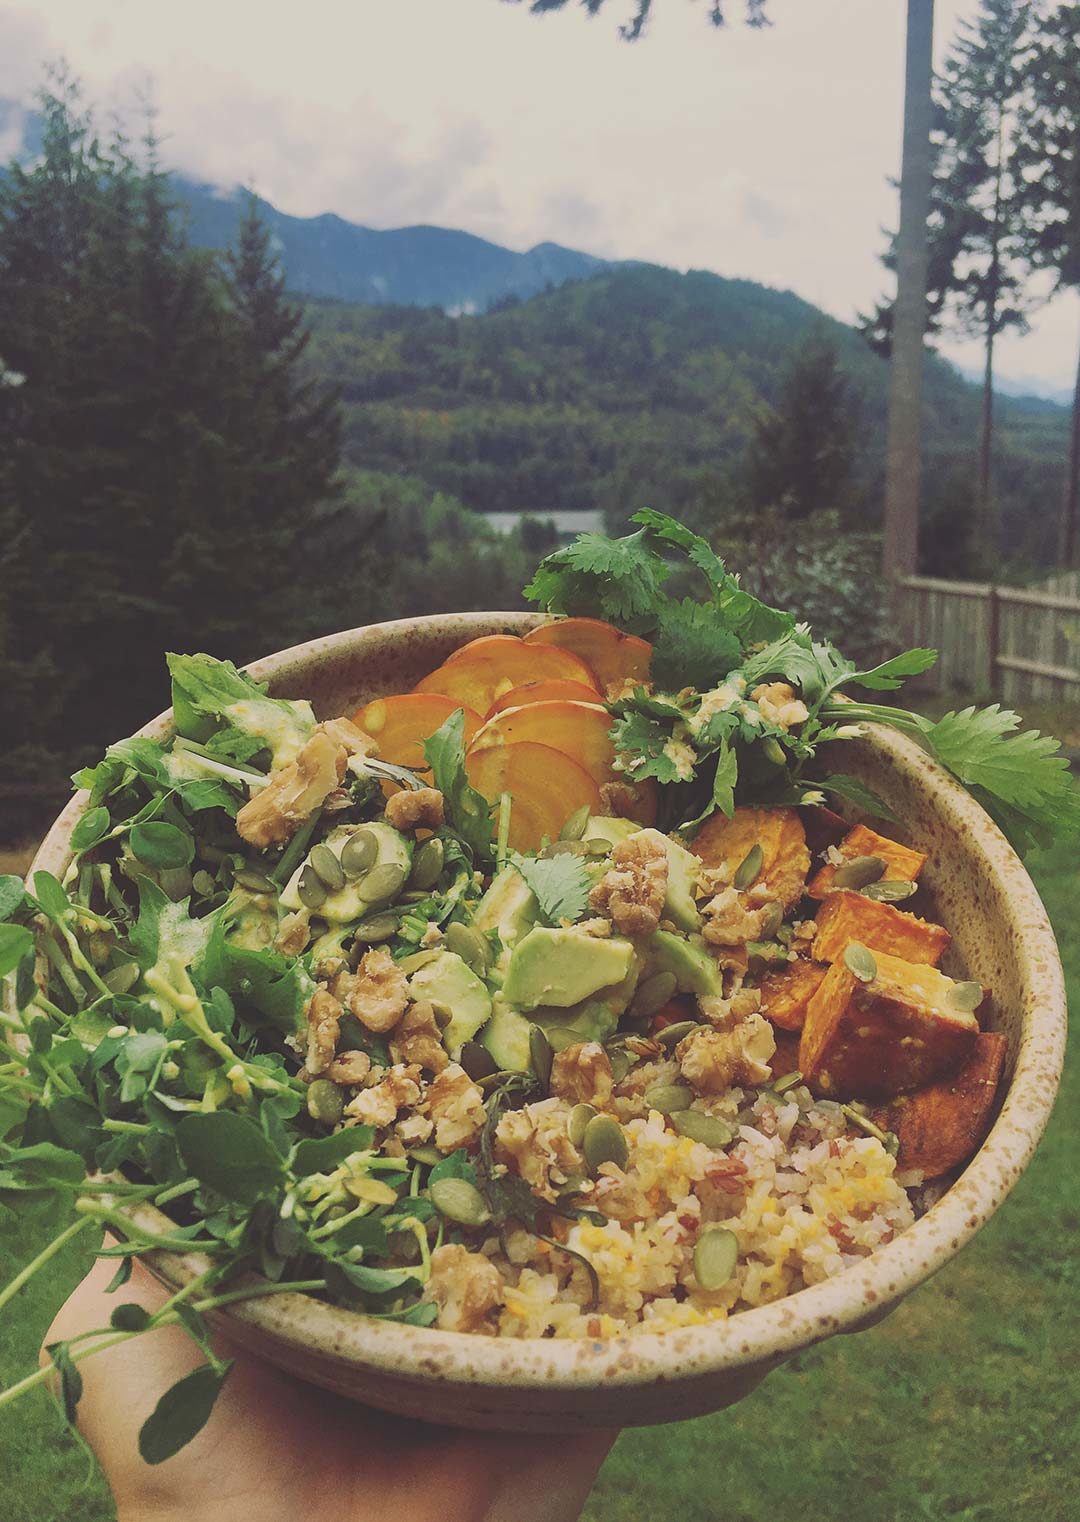 zesty-life-vegan-buddha-bowl-recipes-gluten-free-plant-based-squamish